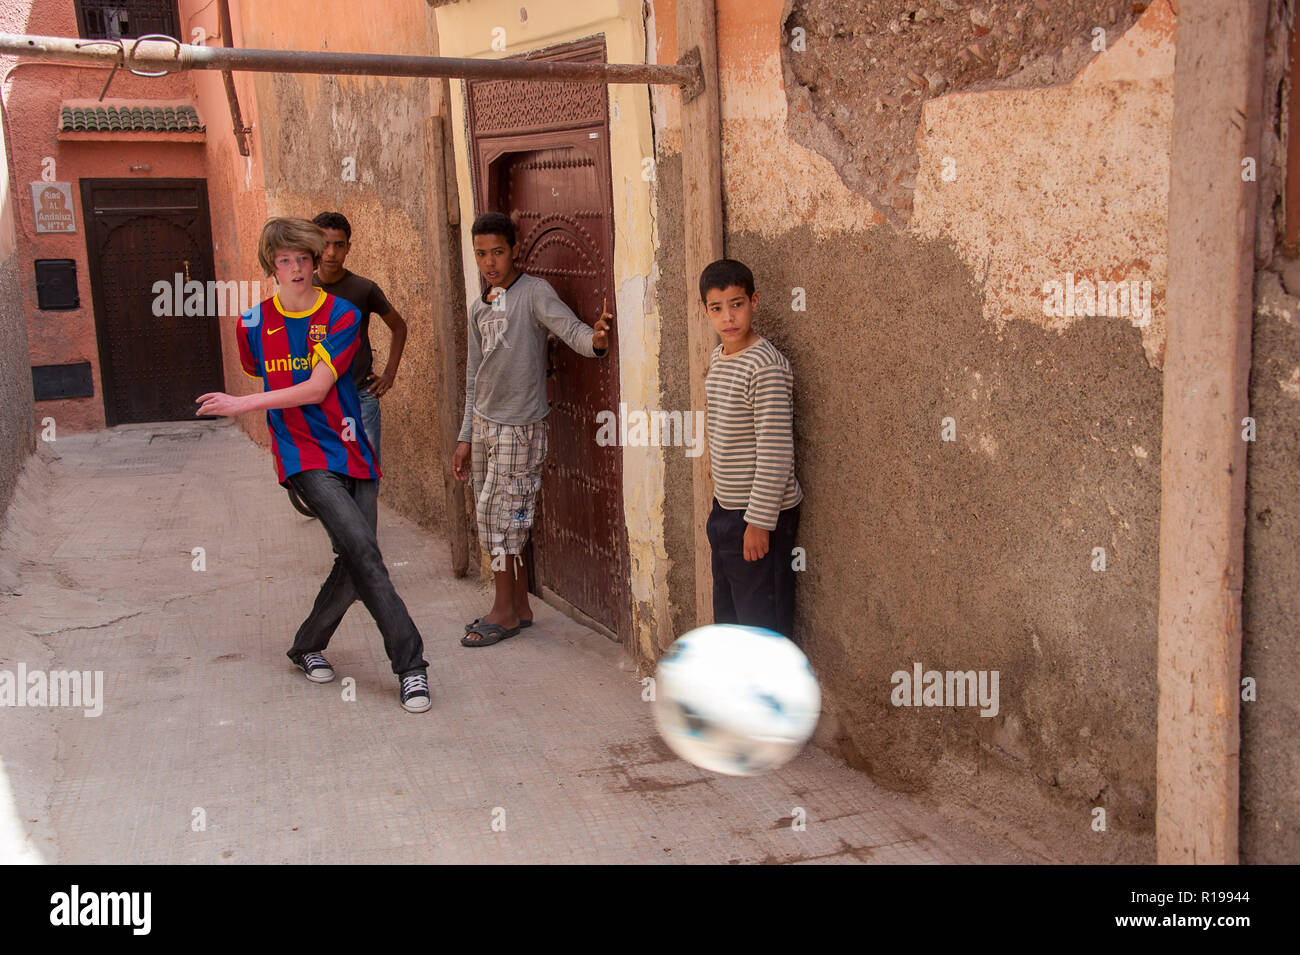 18-04-11. Marrakech, Maroc. Garçon anglais jouant au football avec les garçons marocains dans une ruelle dans la médina. Photo © Simon Grosset / Q Photography Banque D'Images